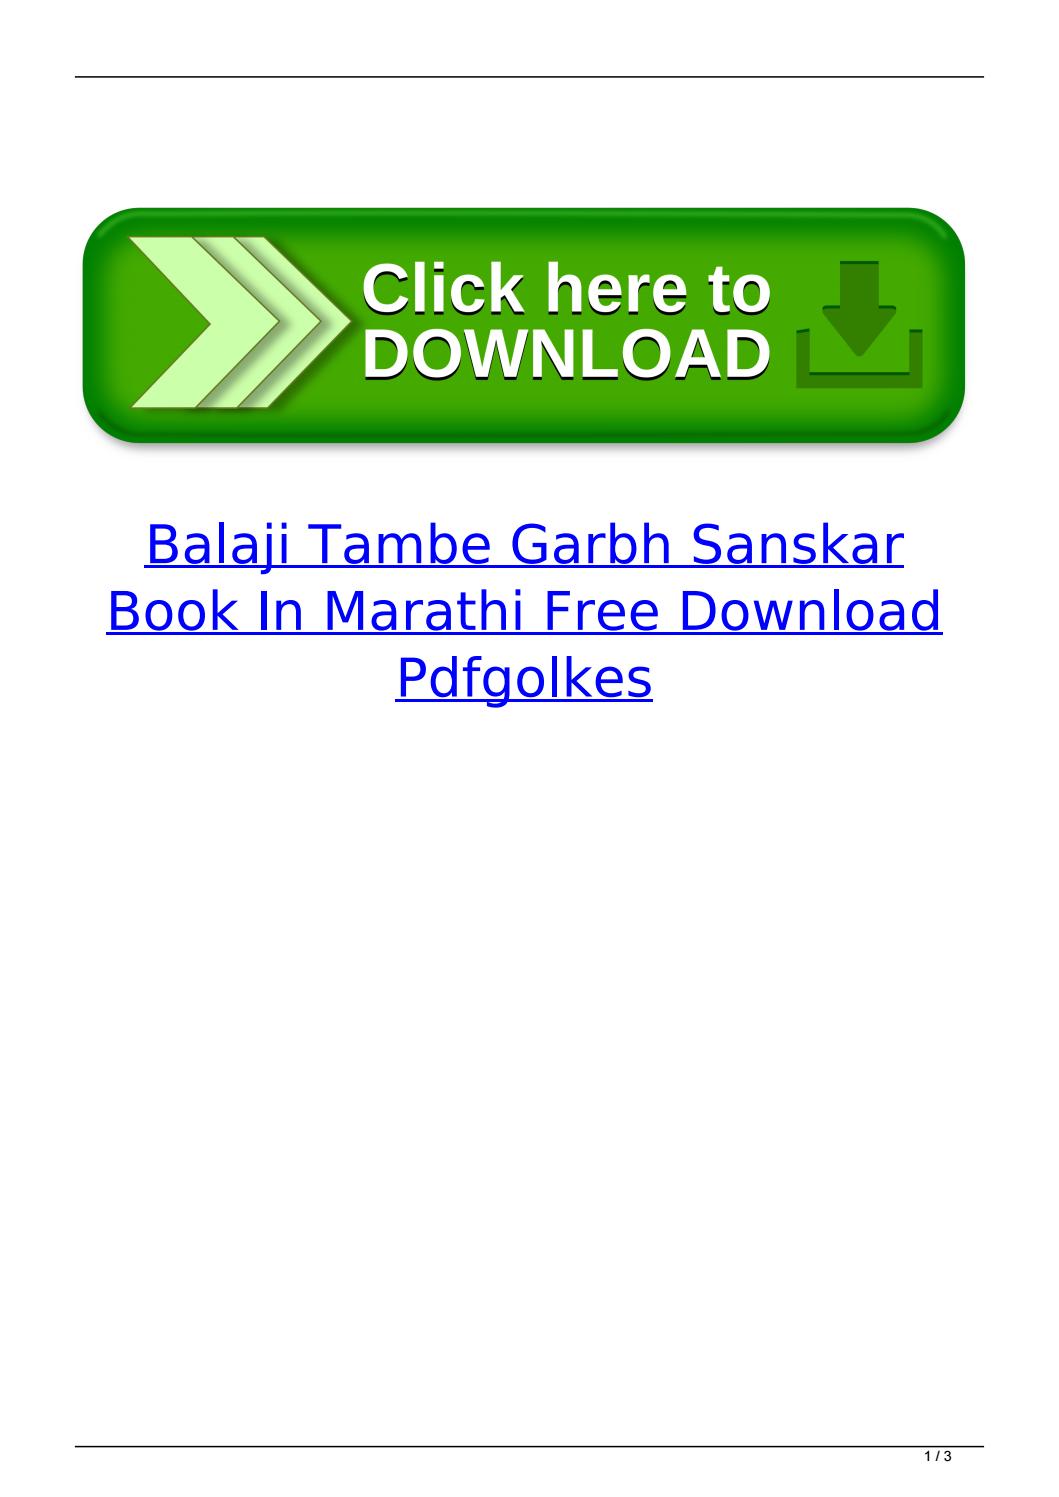 pqt balaji book pdf free download